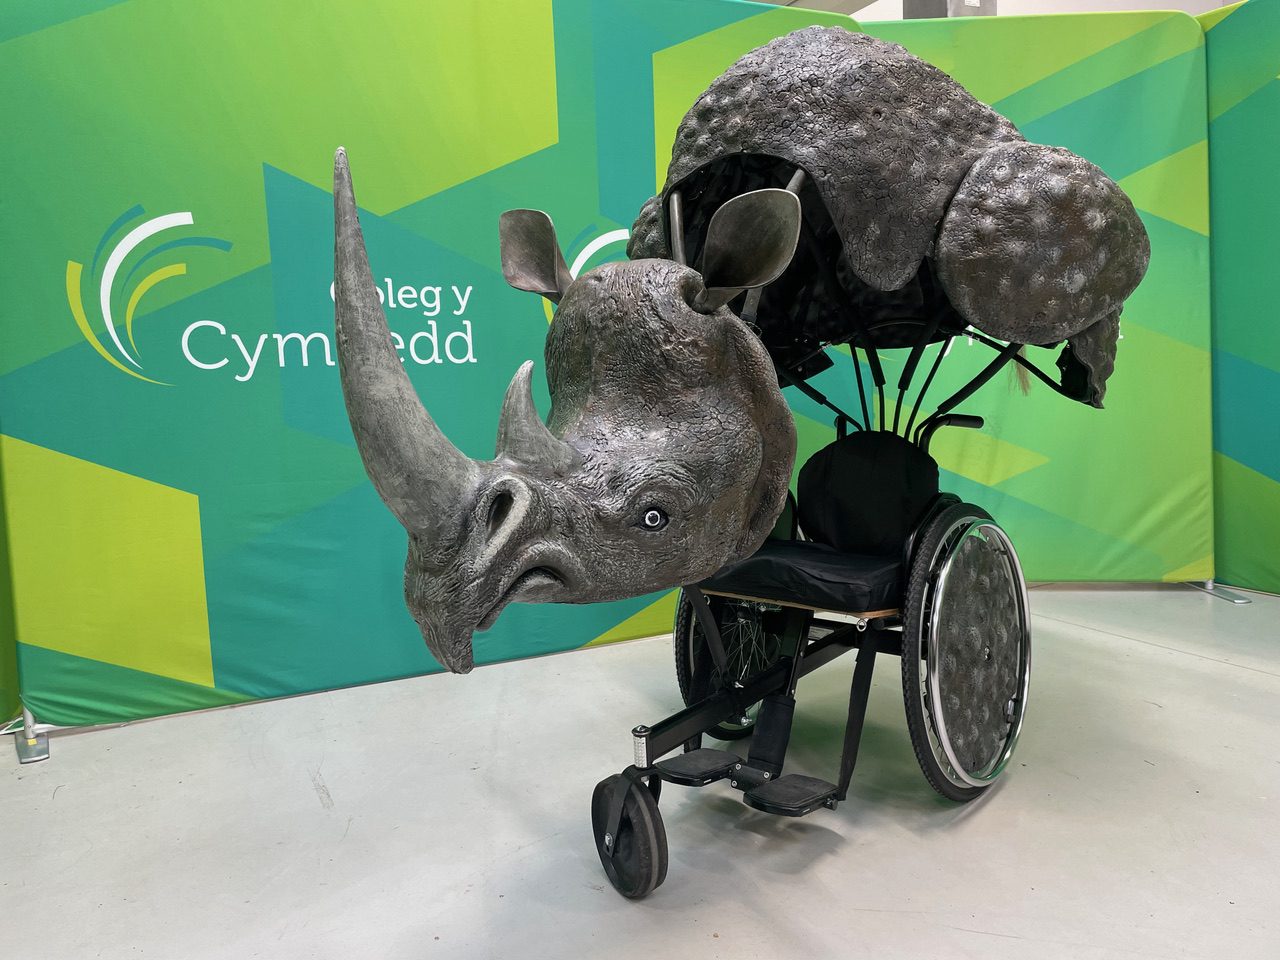 Coleg y Cymoedd learners create first ever rhino wheelchair costume for London Marathon